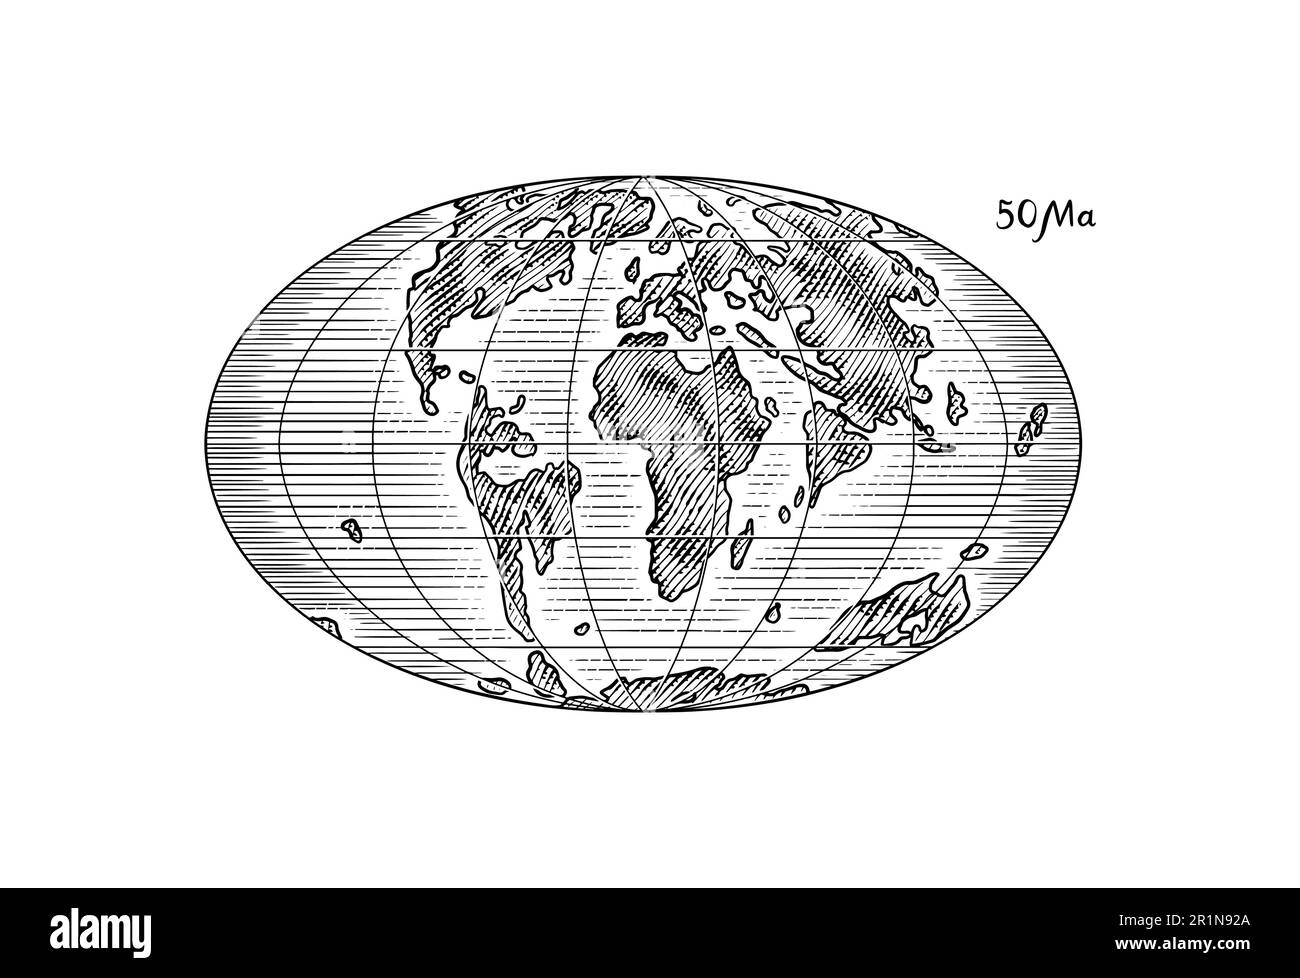 Plattentektonik auf dem Planeten Erde. Pangaea. Kontinentale Drift. Superkontinent bei 50 Ma. Die Ära der Dinosaurier. Jurassezeit. Mesozoisch. Handgezeichnet Stock Vektor